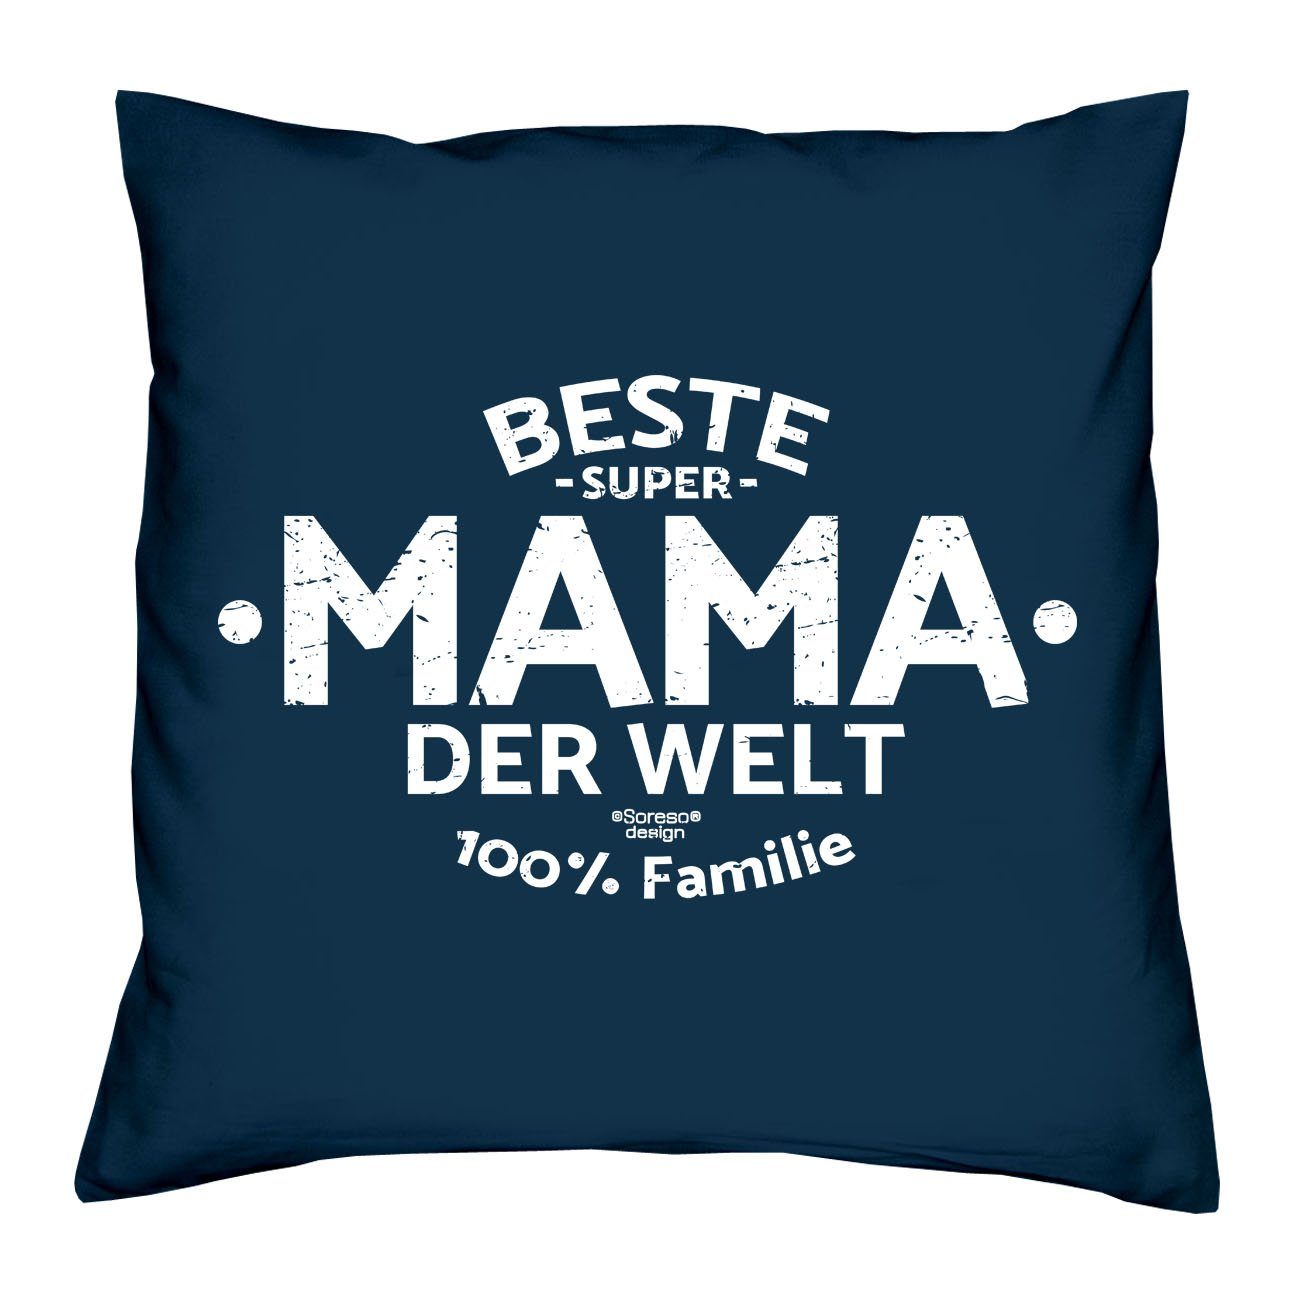 Soreso® Dekokissen Welt Beste & navy-blau Socken Geschenkidee Sleep, Sprüche Weihnachtsgeschenk der Kissen Mama